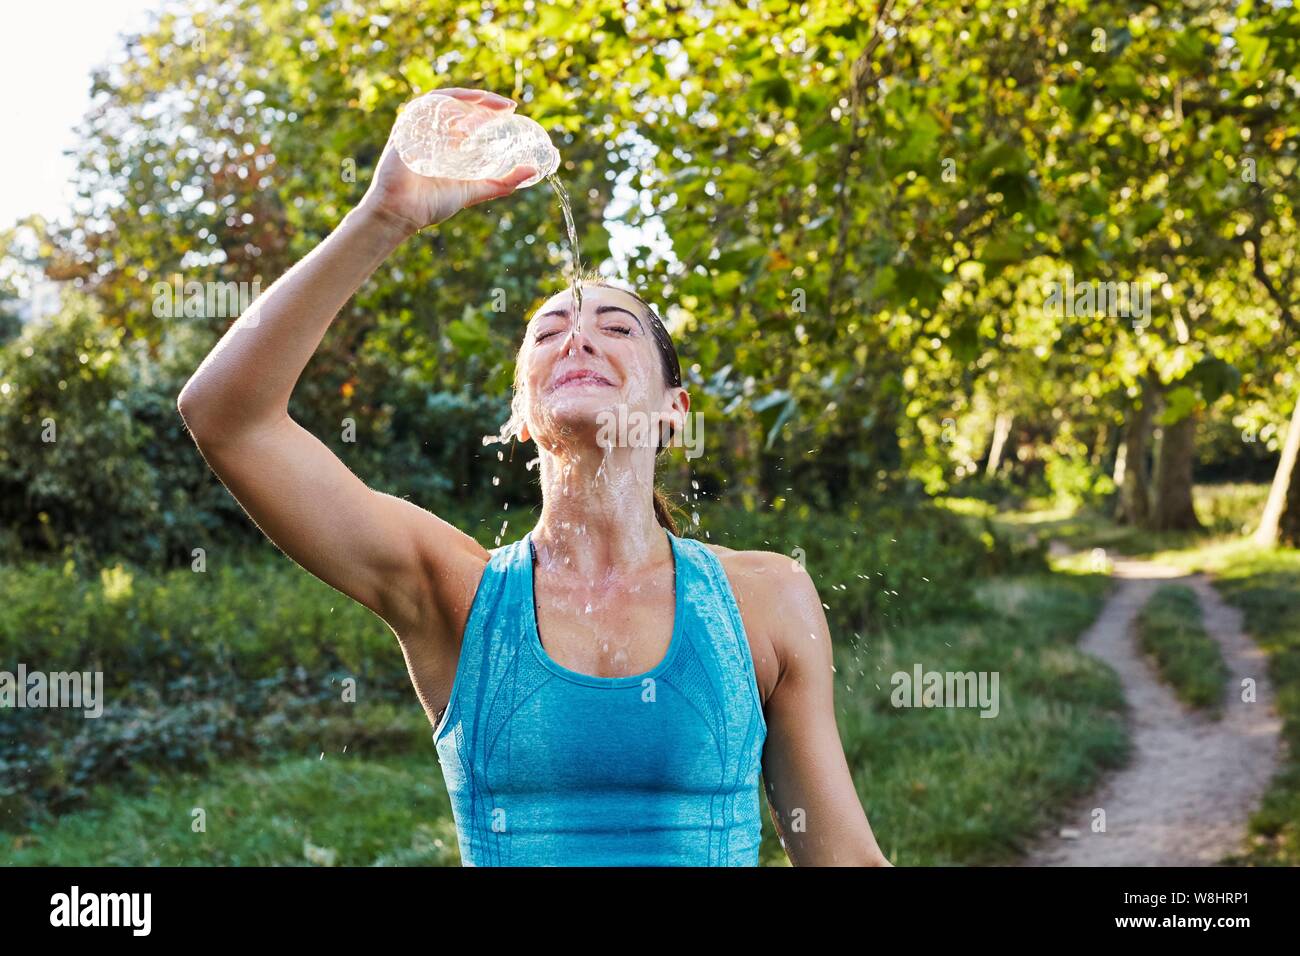 Junge Frau gießt Wasser über ihr Gesicht. Stockfoto